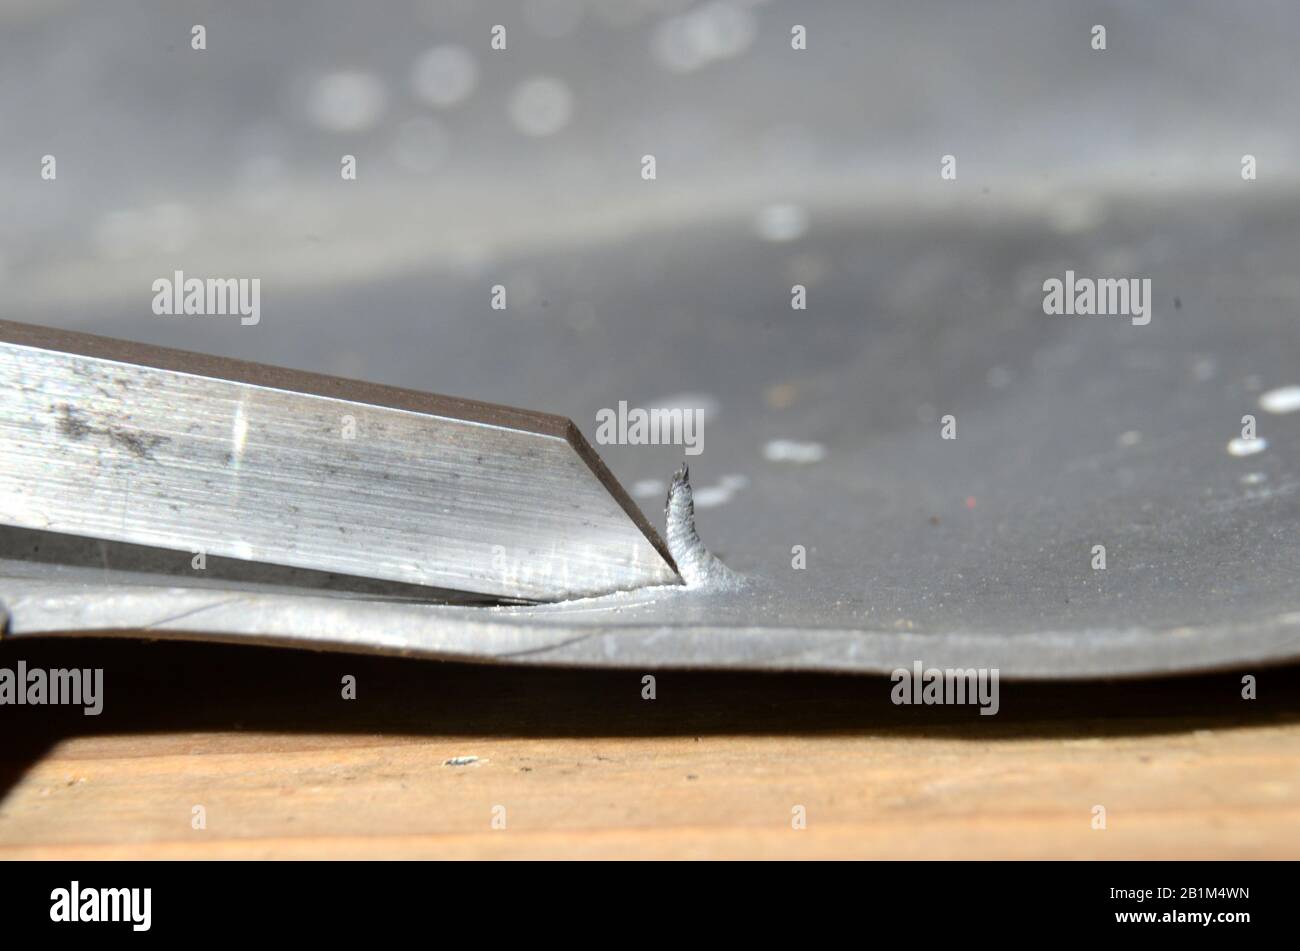 Das auf einem Blech verwendete Werkzeug zum Greben kann man sehen, wie es einen Metallspan angehoben hat. Stockfoto